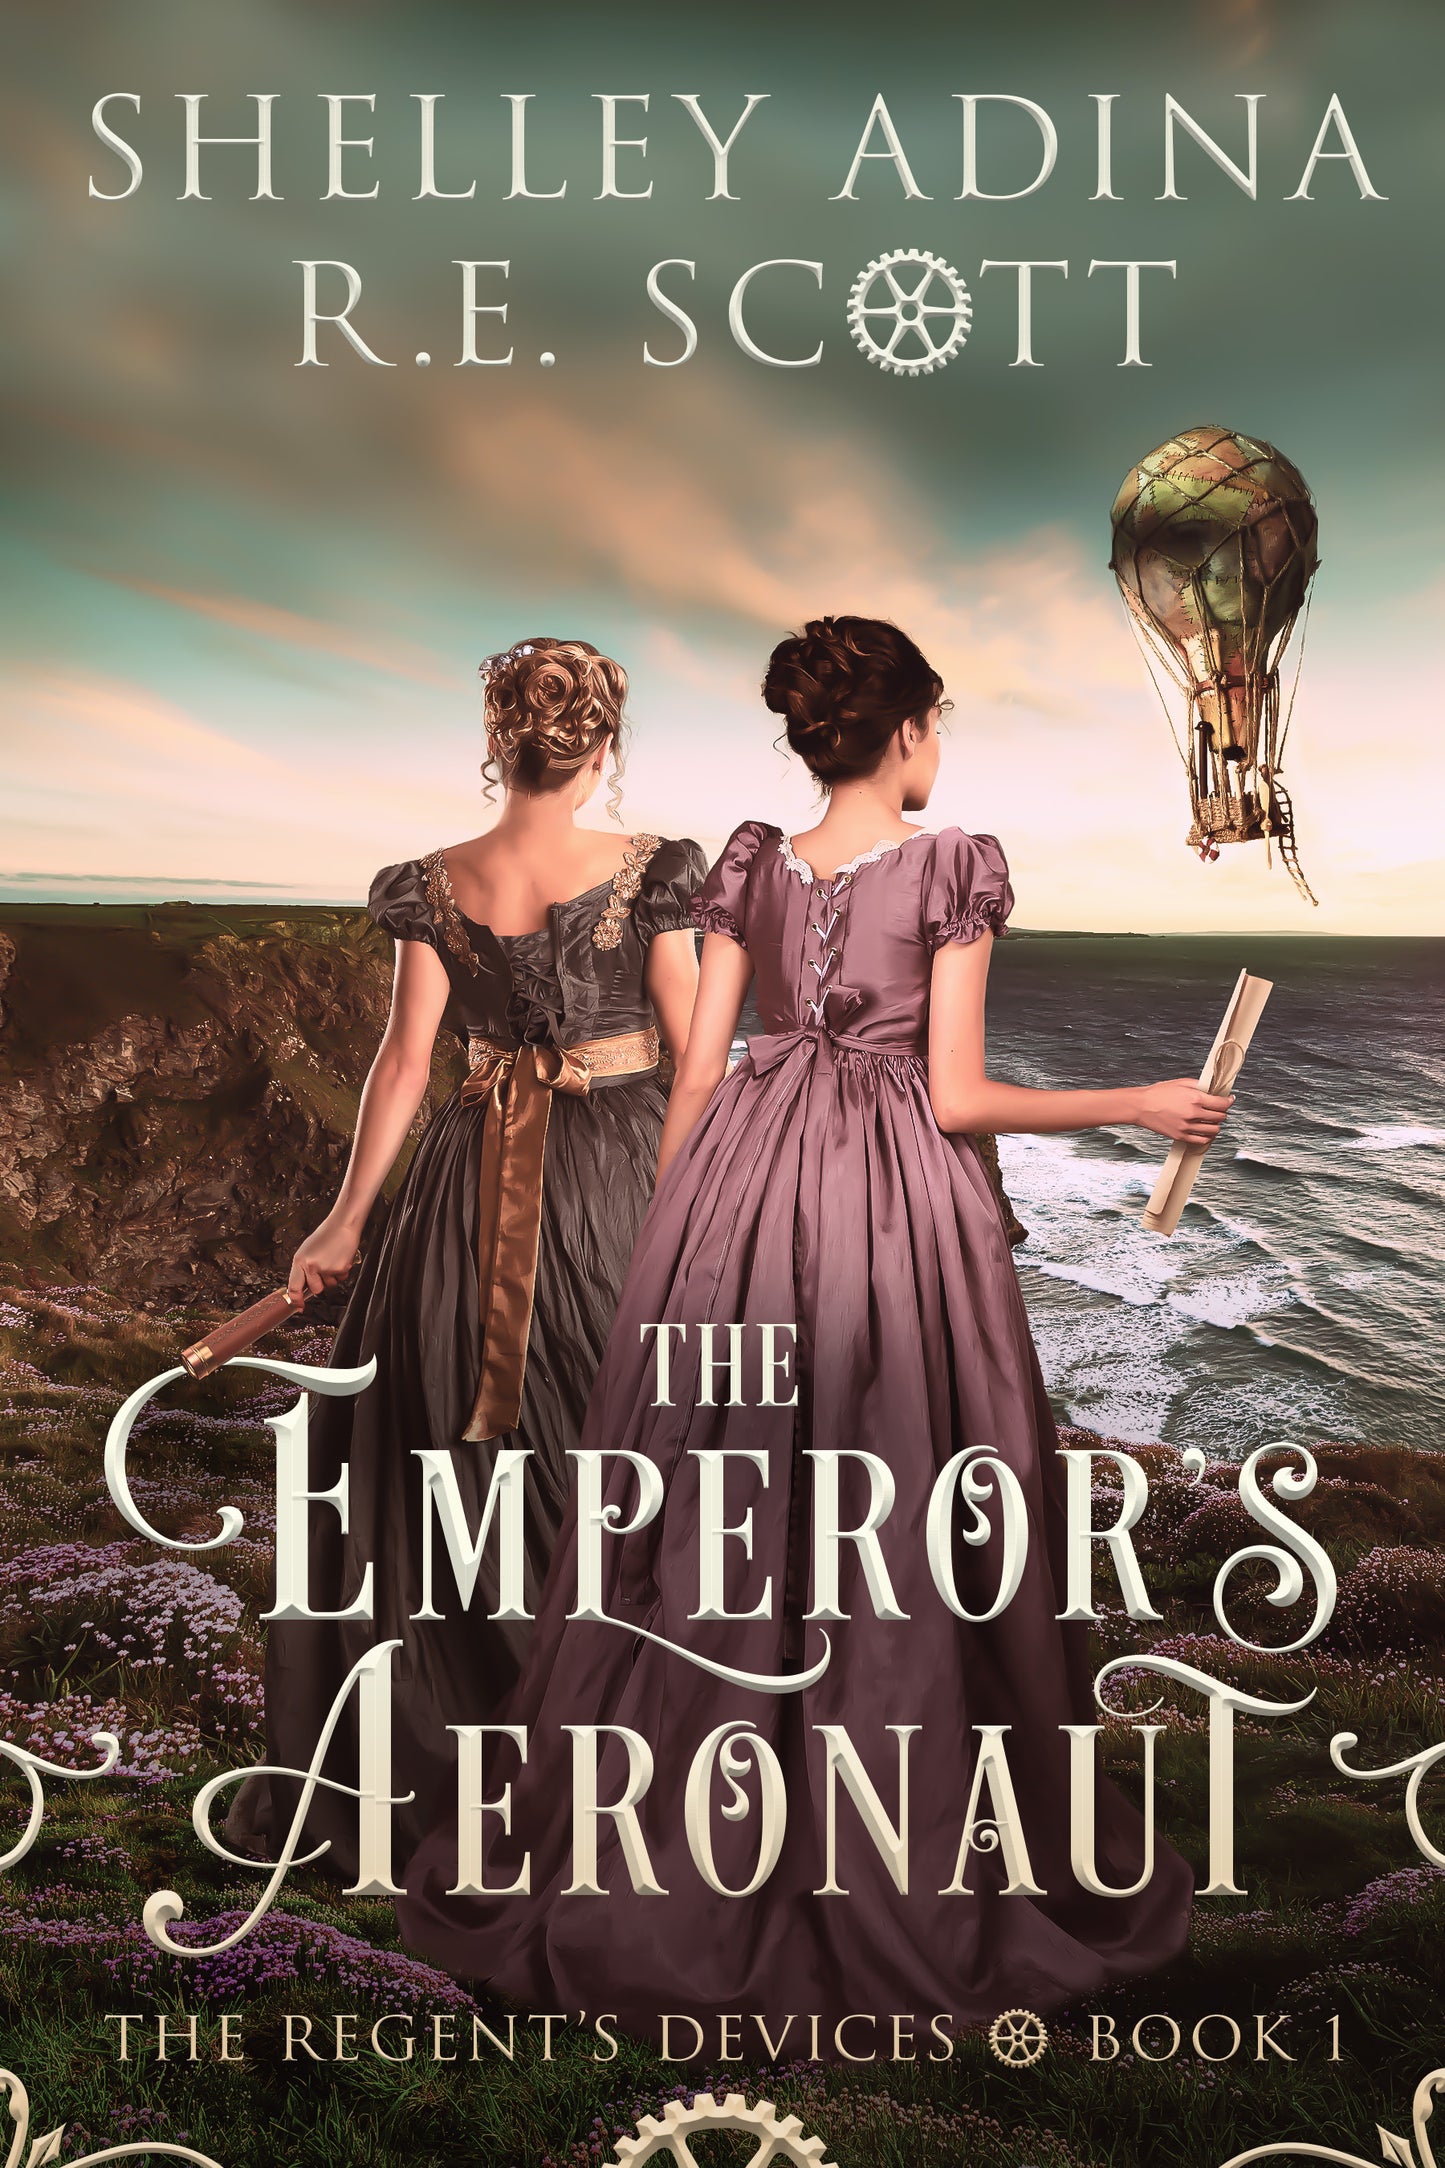 The Emperor's Aeronaut by Shelley Adina and R.E. Scott